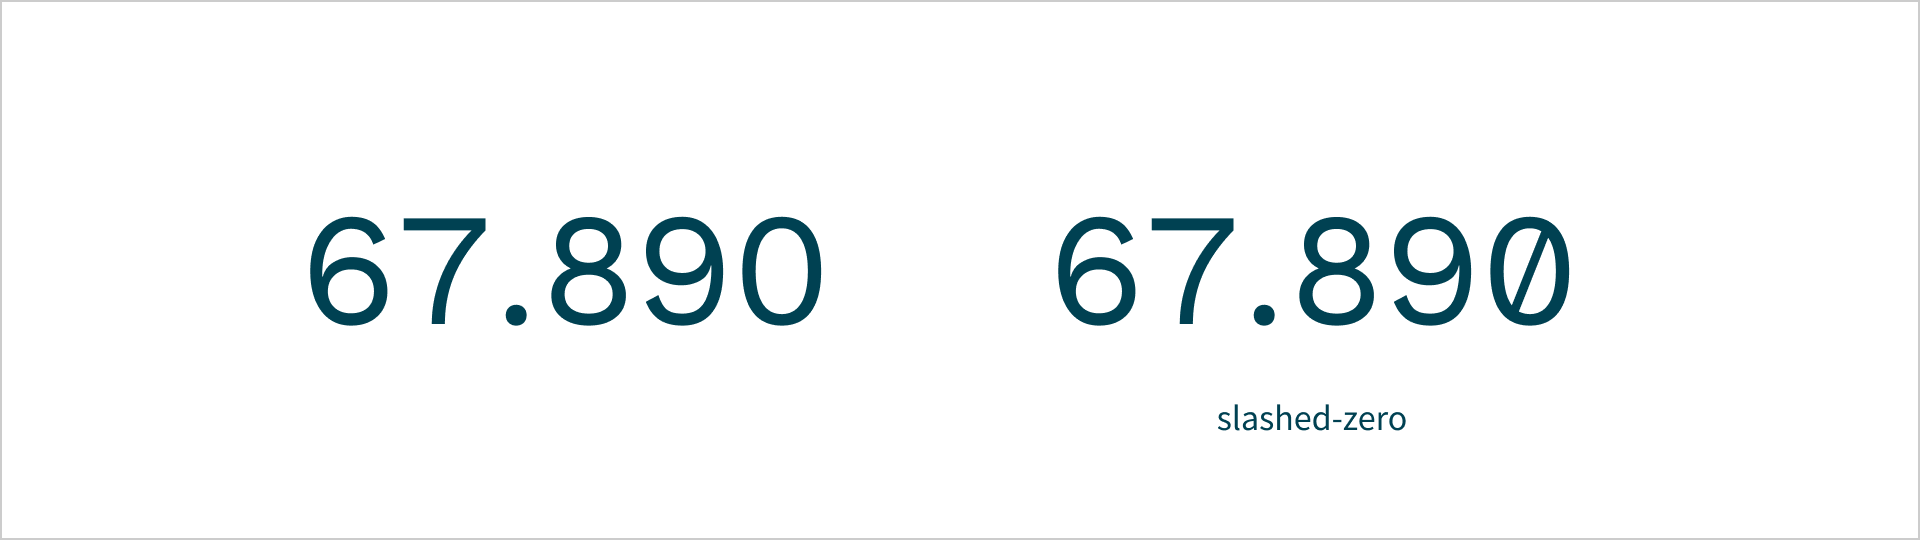 Afgebeeld is twee keer het getal 67.890. Bij het eerste voorbeeld wordt er geen gebruik gemaakt van een slashed zero. Bij het twee voorbeeld wel.